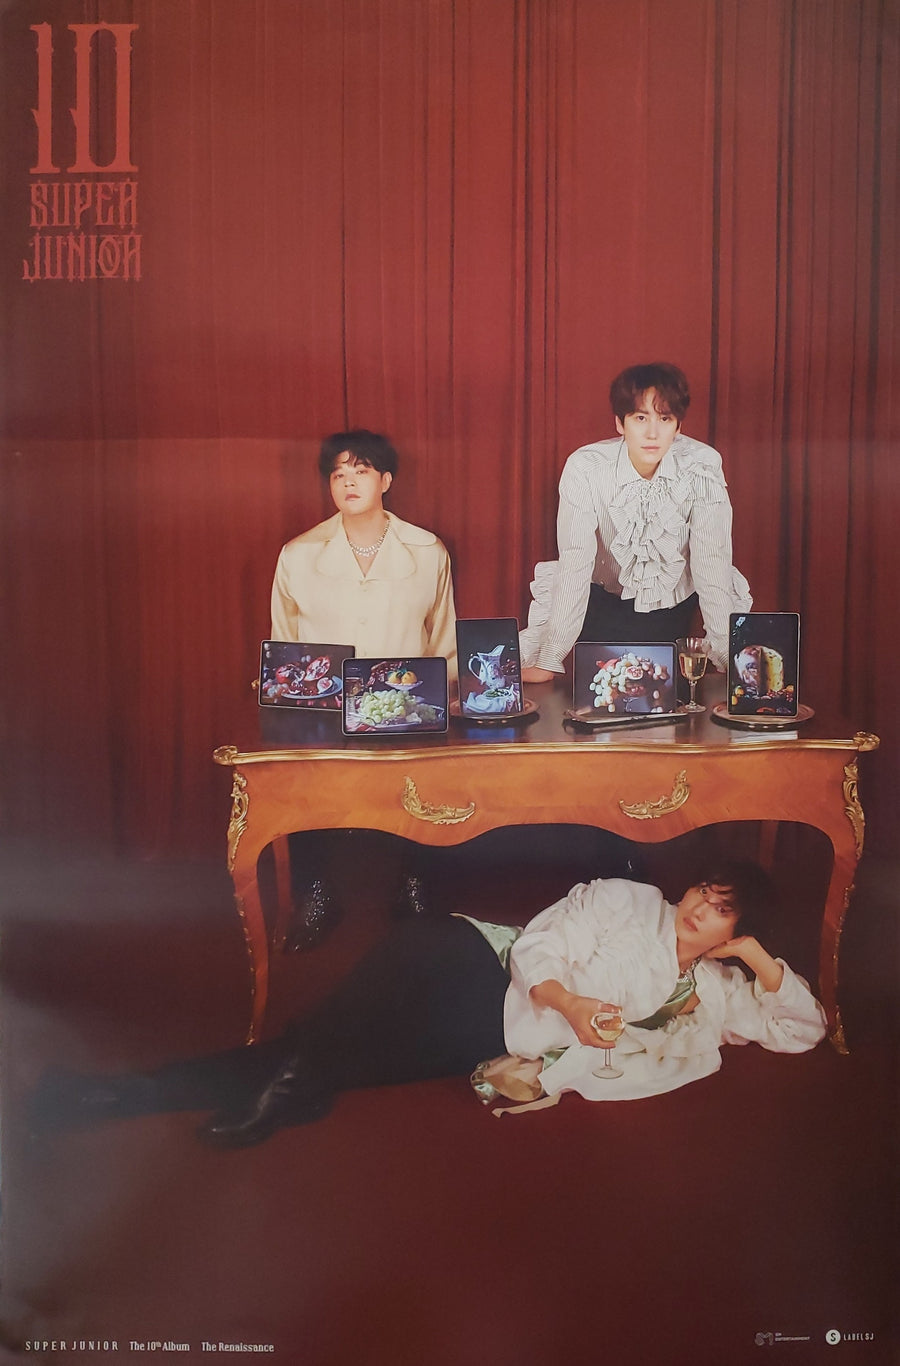 Super Junior 10th Album The Renaissance (The Renaissance Style) Official Poster - Photo Concept Versatile